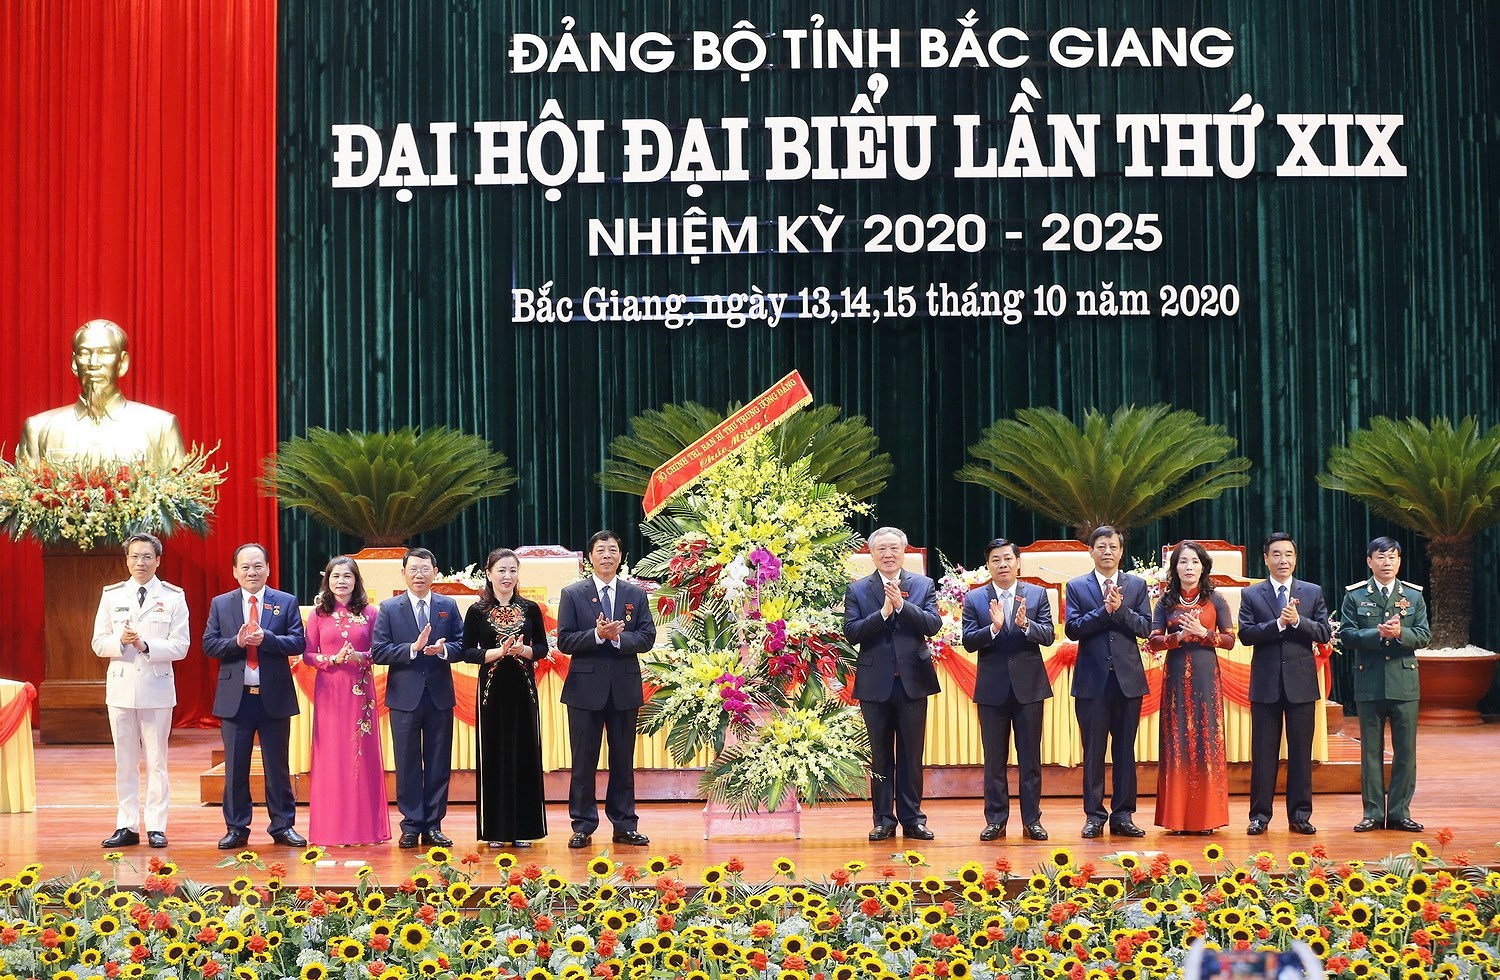 [Photo] Khai mac Dai hoi dai bieu Dang bo tinh Bac Giang lan thu XIX hinh anh 8